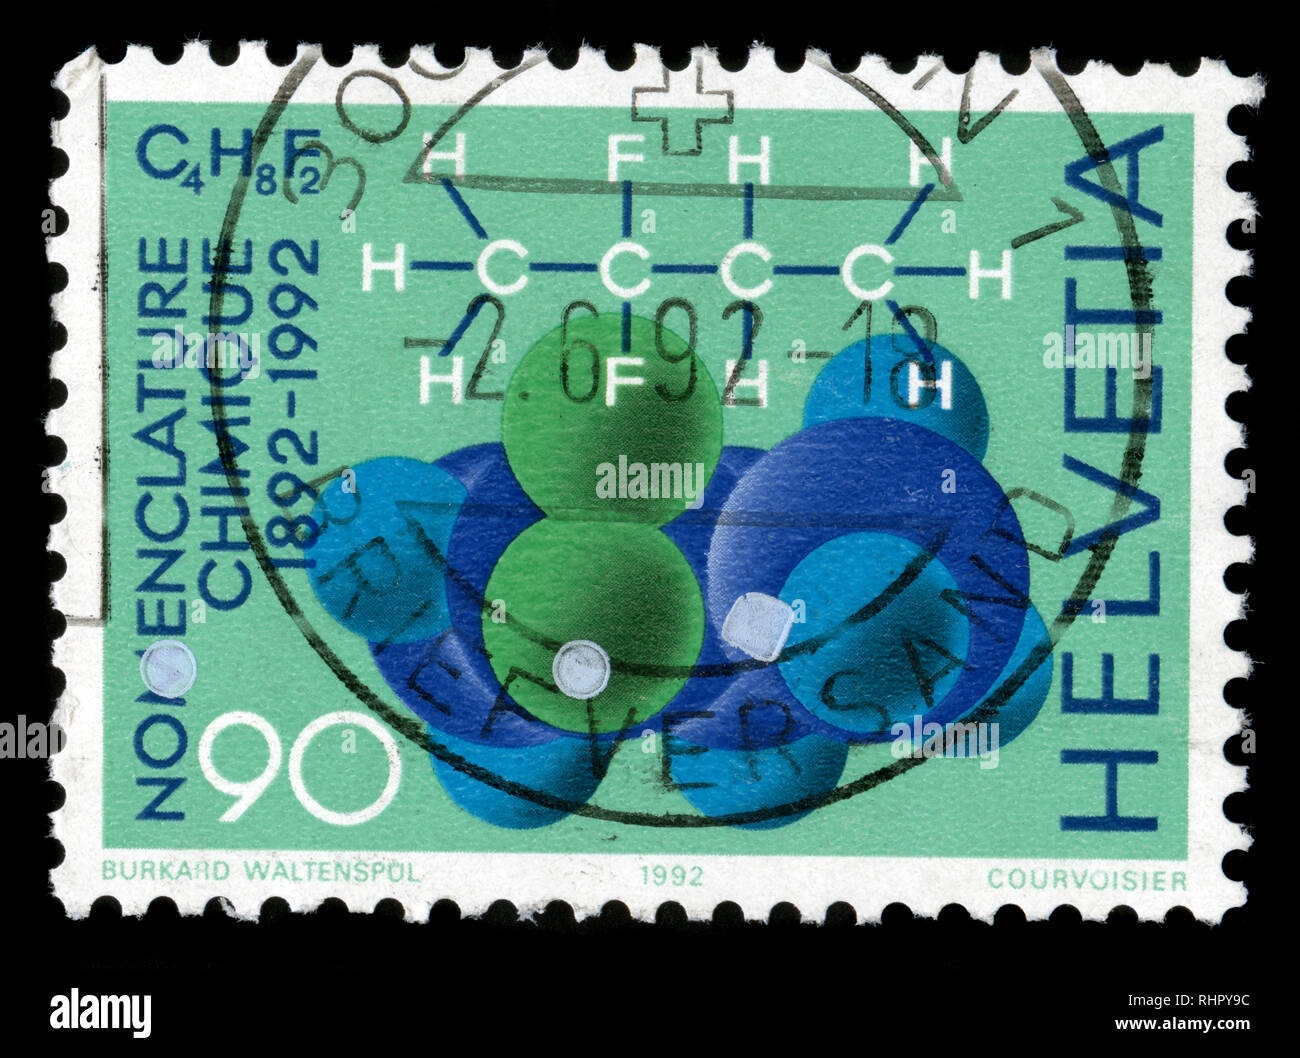 Francobollo dalla Svizzera a livello internazionale di nomenclatura Chemics Conference series rilasciato in 1992 Foto Stock